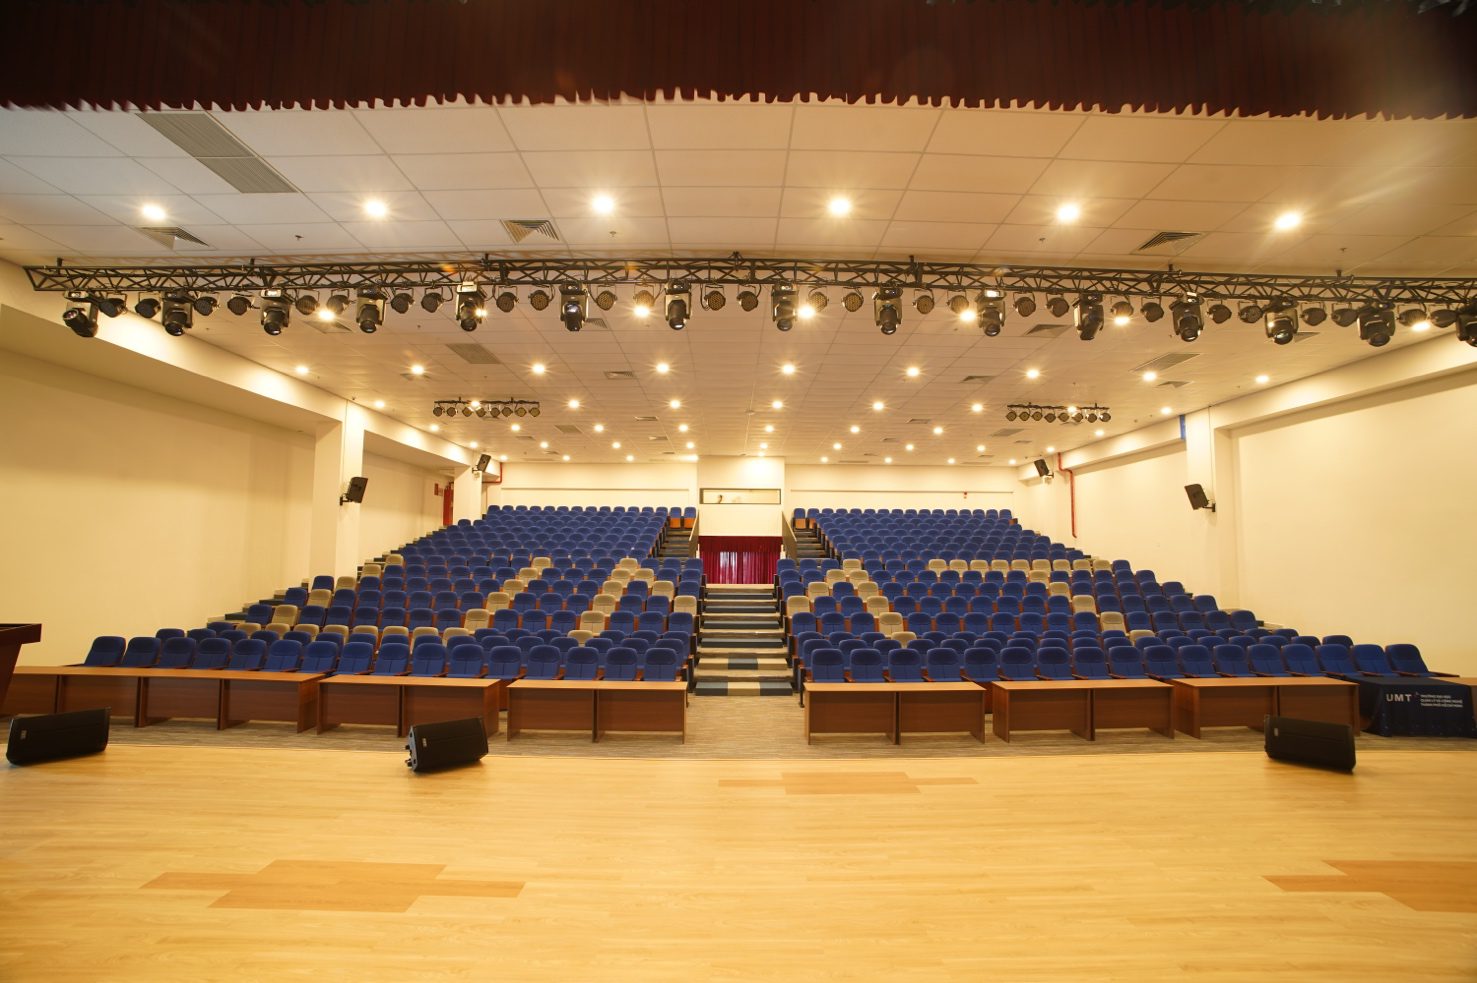 Hội trường UMT với sức chứa gần 500 người, được đầu tư âm thanh ánh sáng, sân khấu chuyên nghiệp.